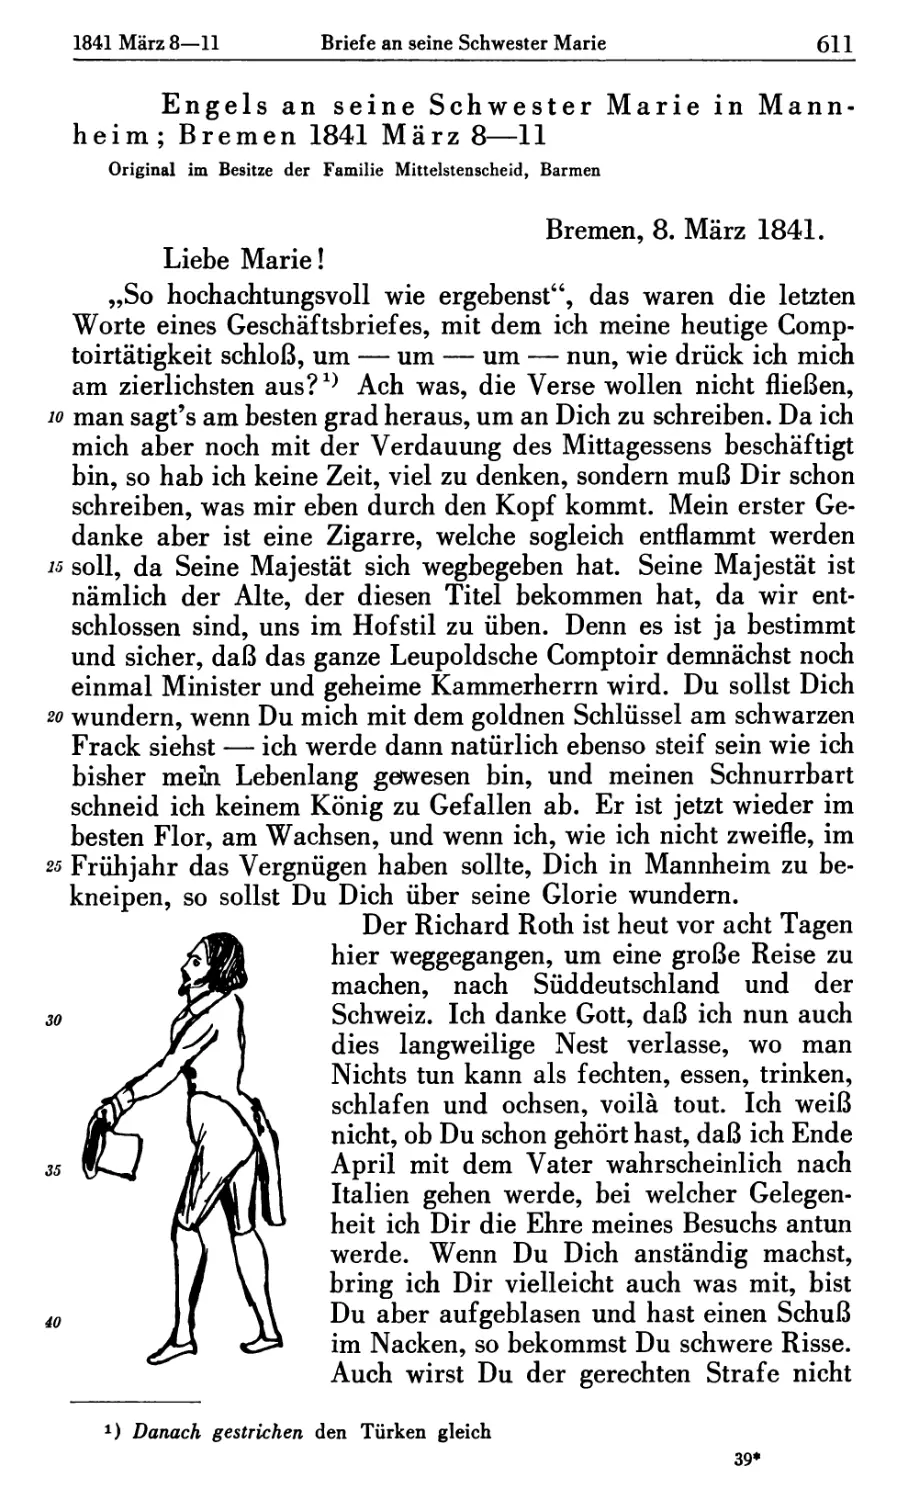 Engels an seine Schwester Marie in Mannheim; Bremen 1841 März 8-11